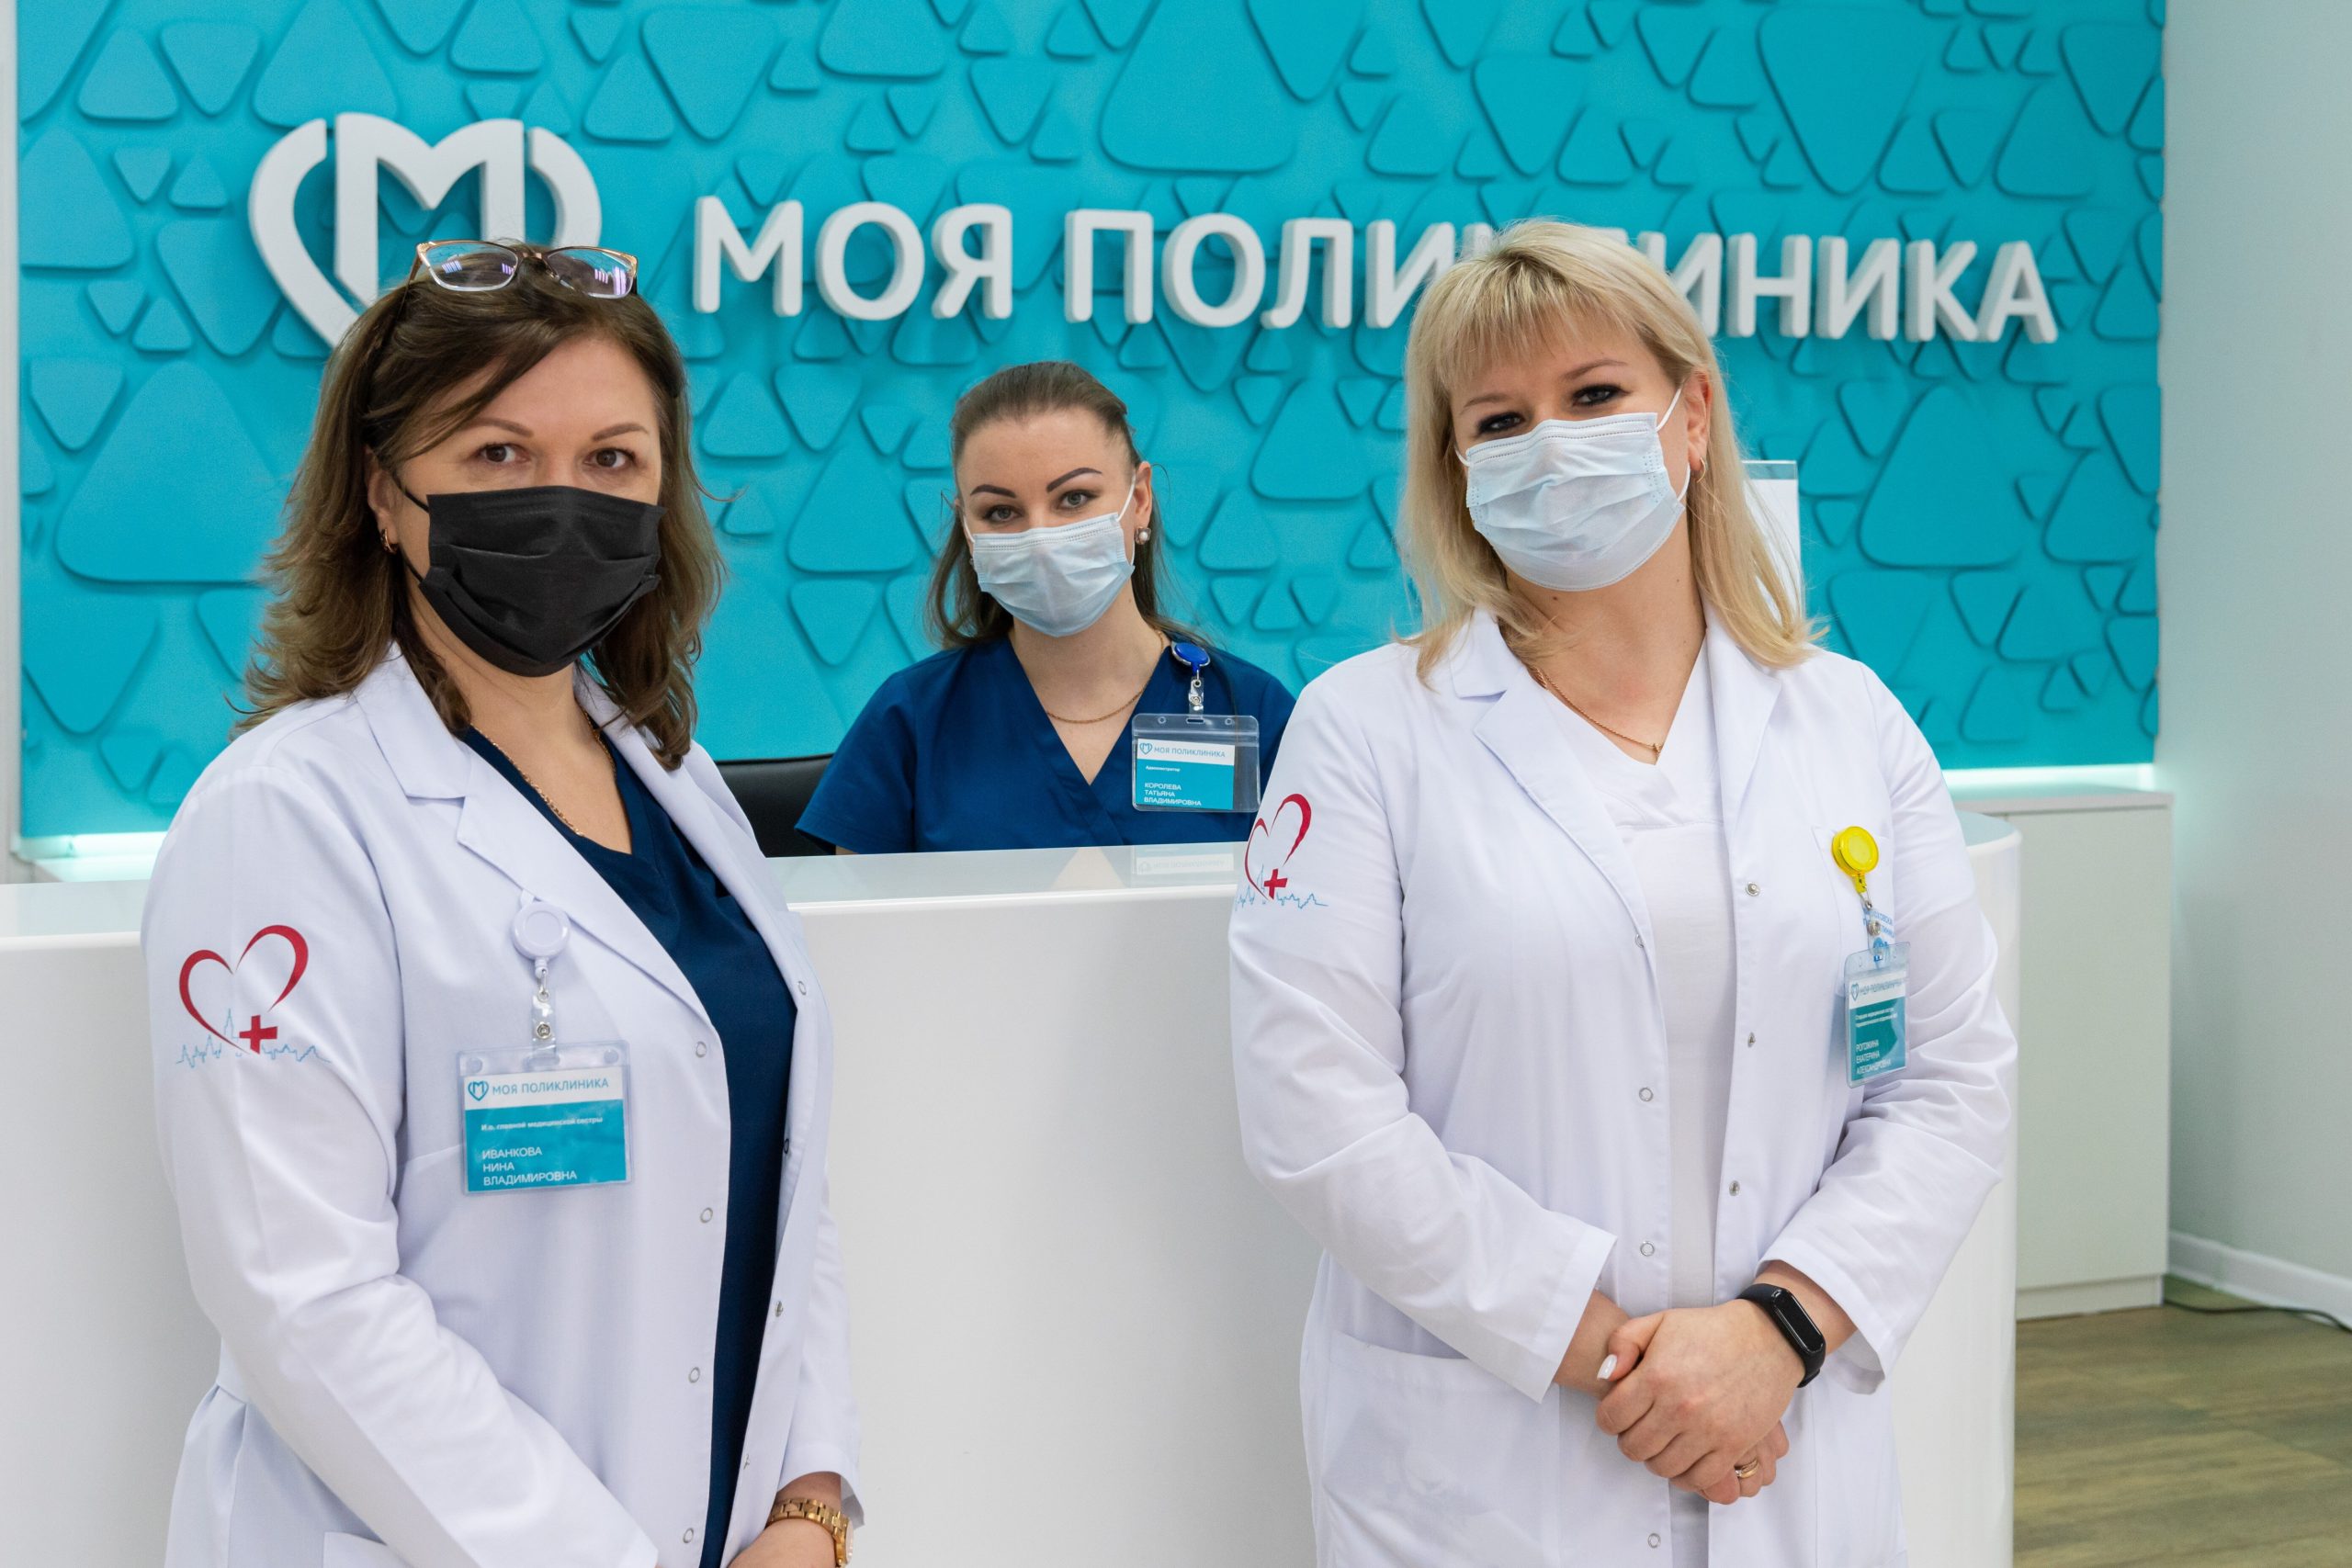  Врачи поликлиник Останкина будут посещать москвичей старше 65 лет на дому независимо от тяжести течения COVID-19